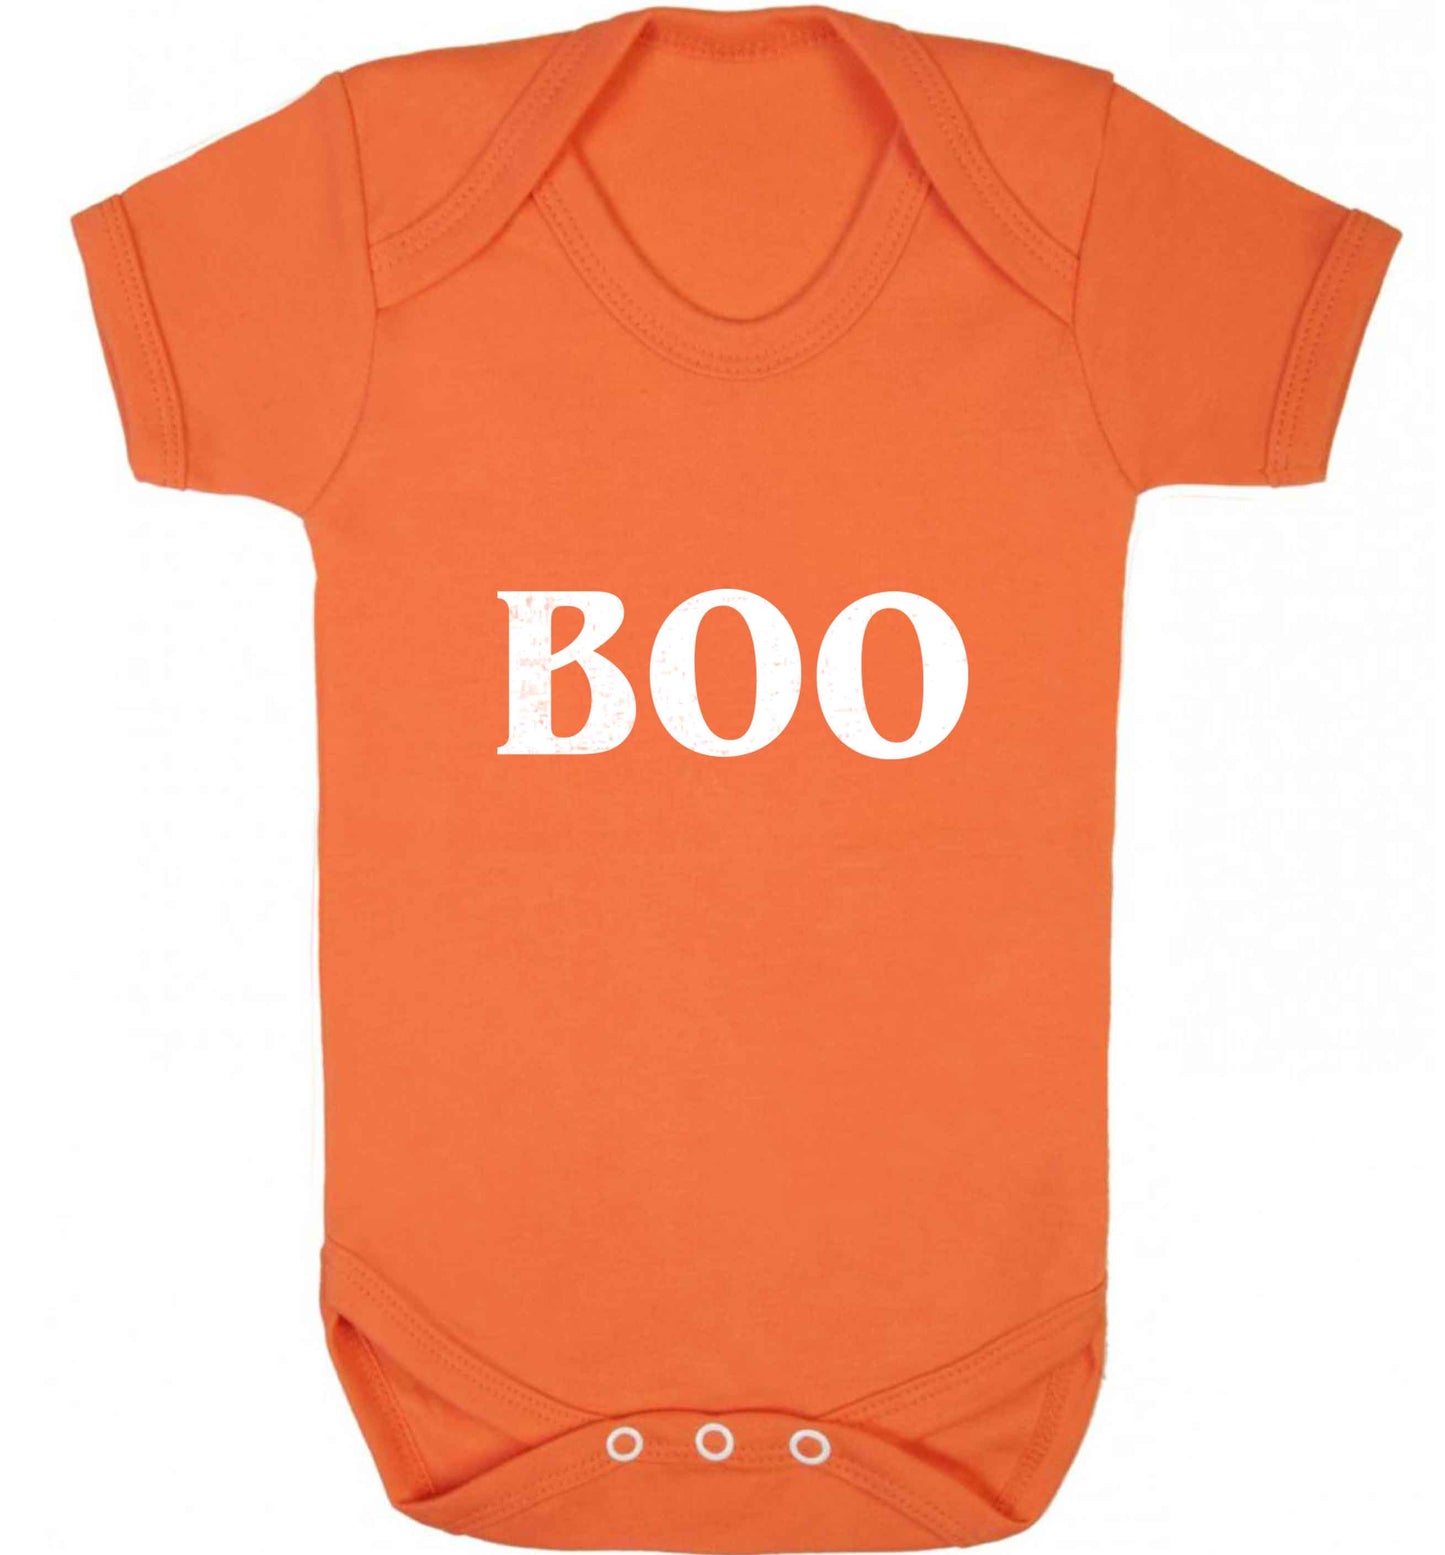 Boo baby vest orange 18-24 months